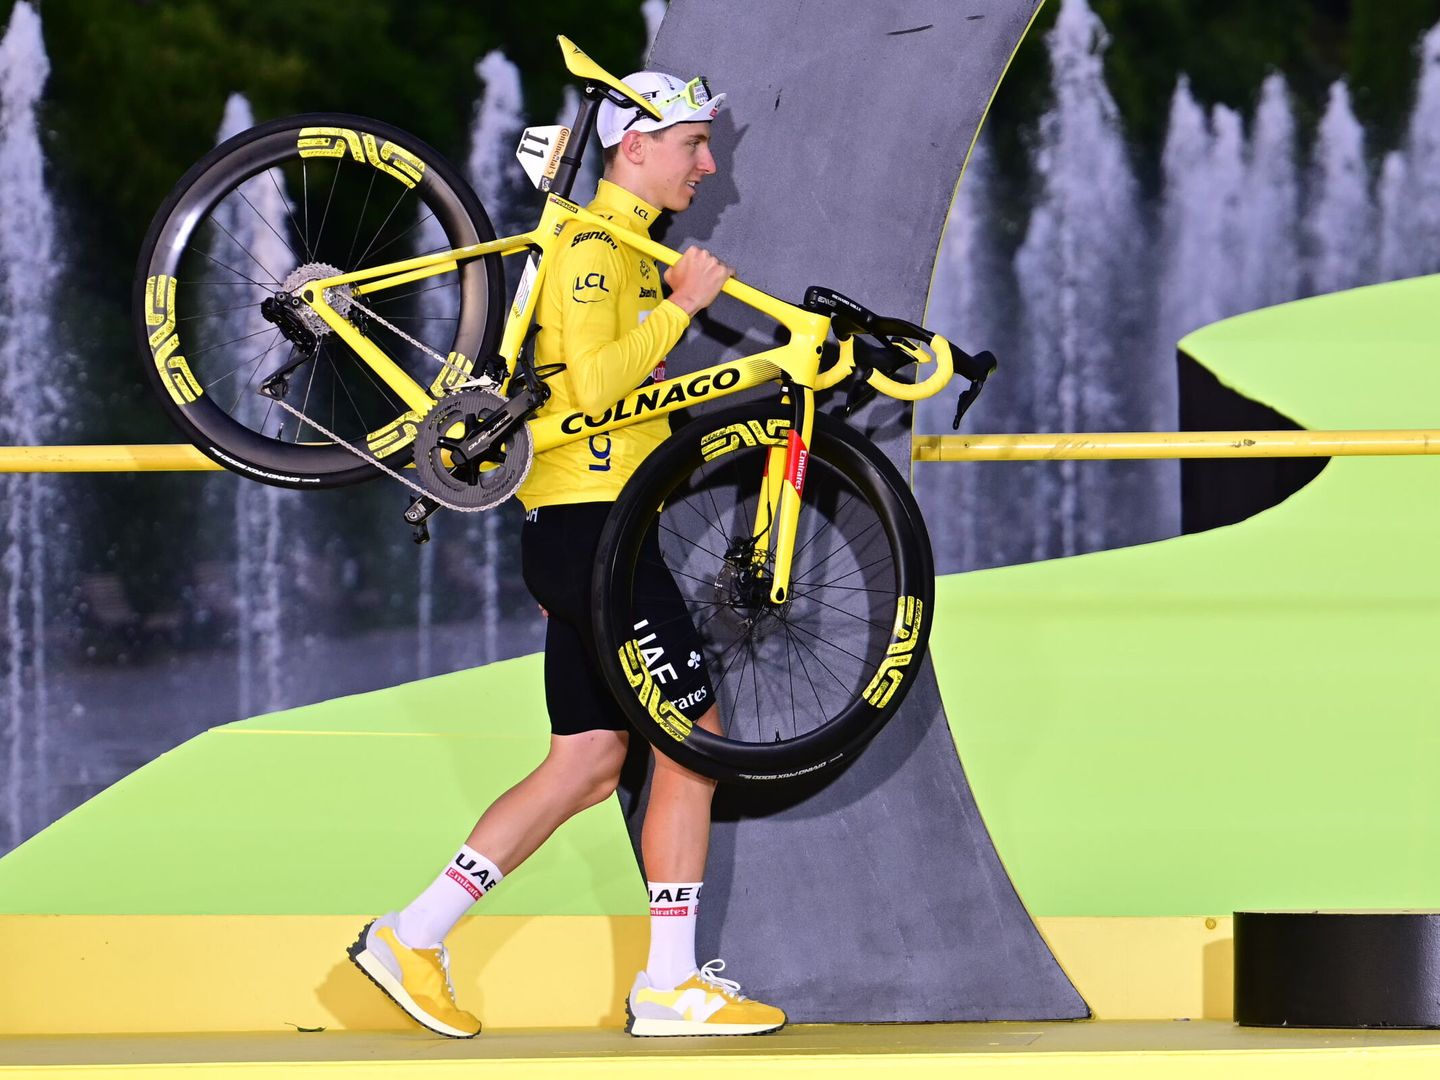 Pogacar sube con su bicicleta al podio de ganadores tras vencer en la última etapa del Tour. (EFE/Papon Bernard)